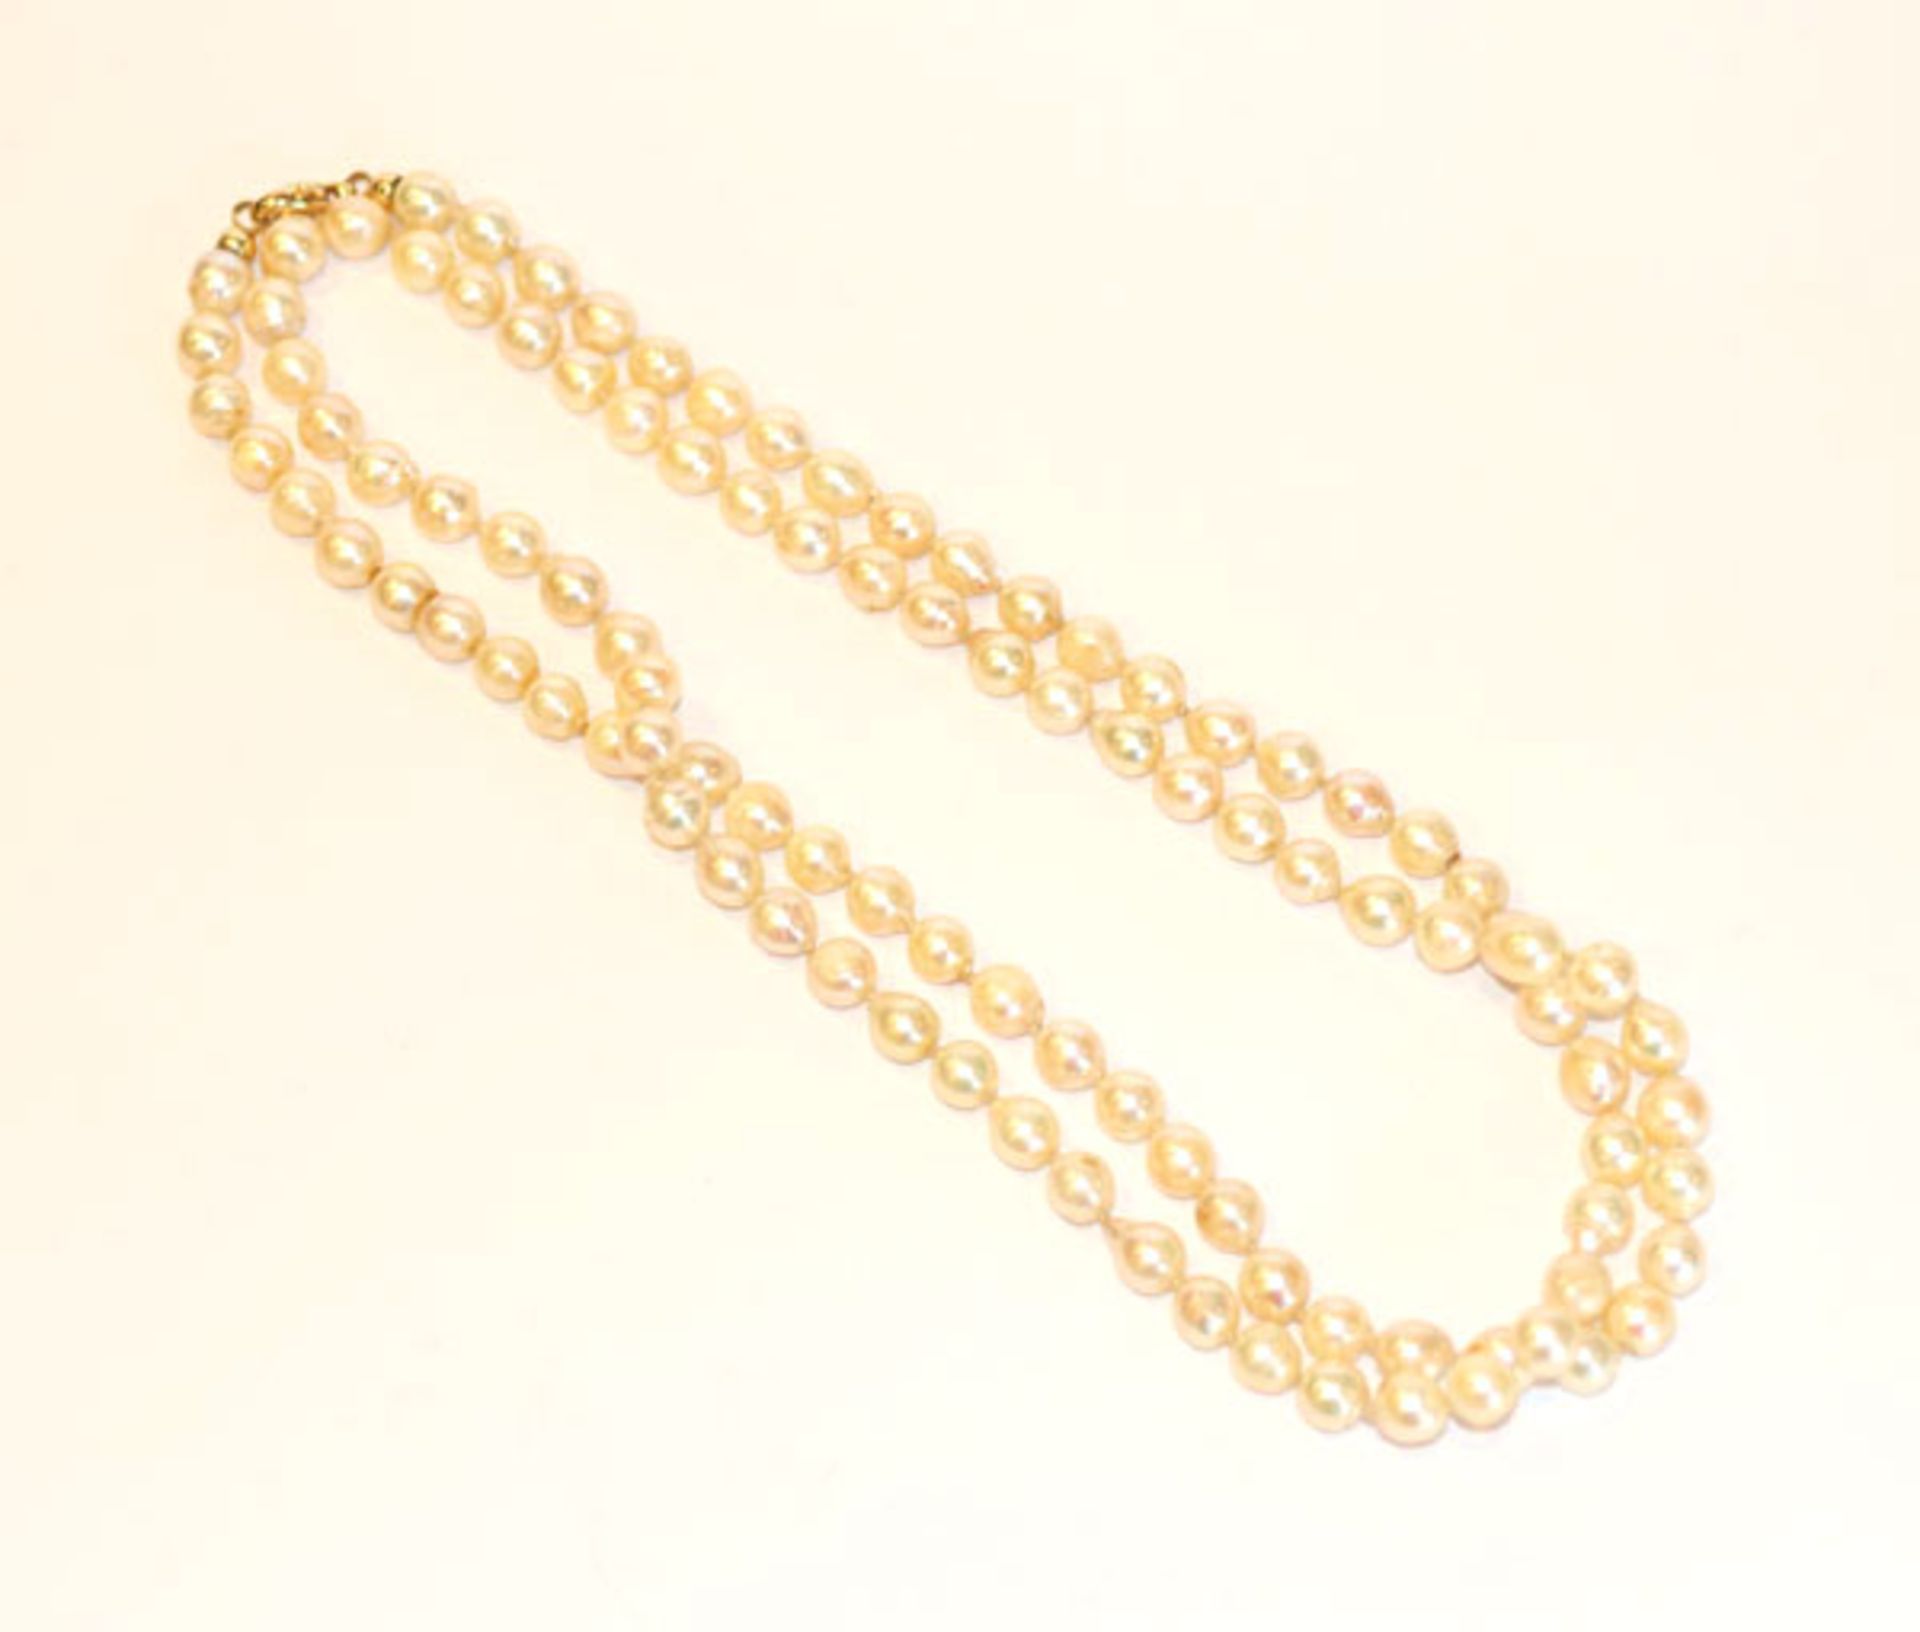 Lange Perlenkette mit 14 k Gelbgold Schließe, Perlen teils beschädigt, Tragespuren